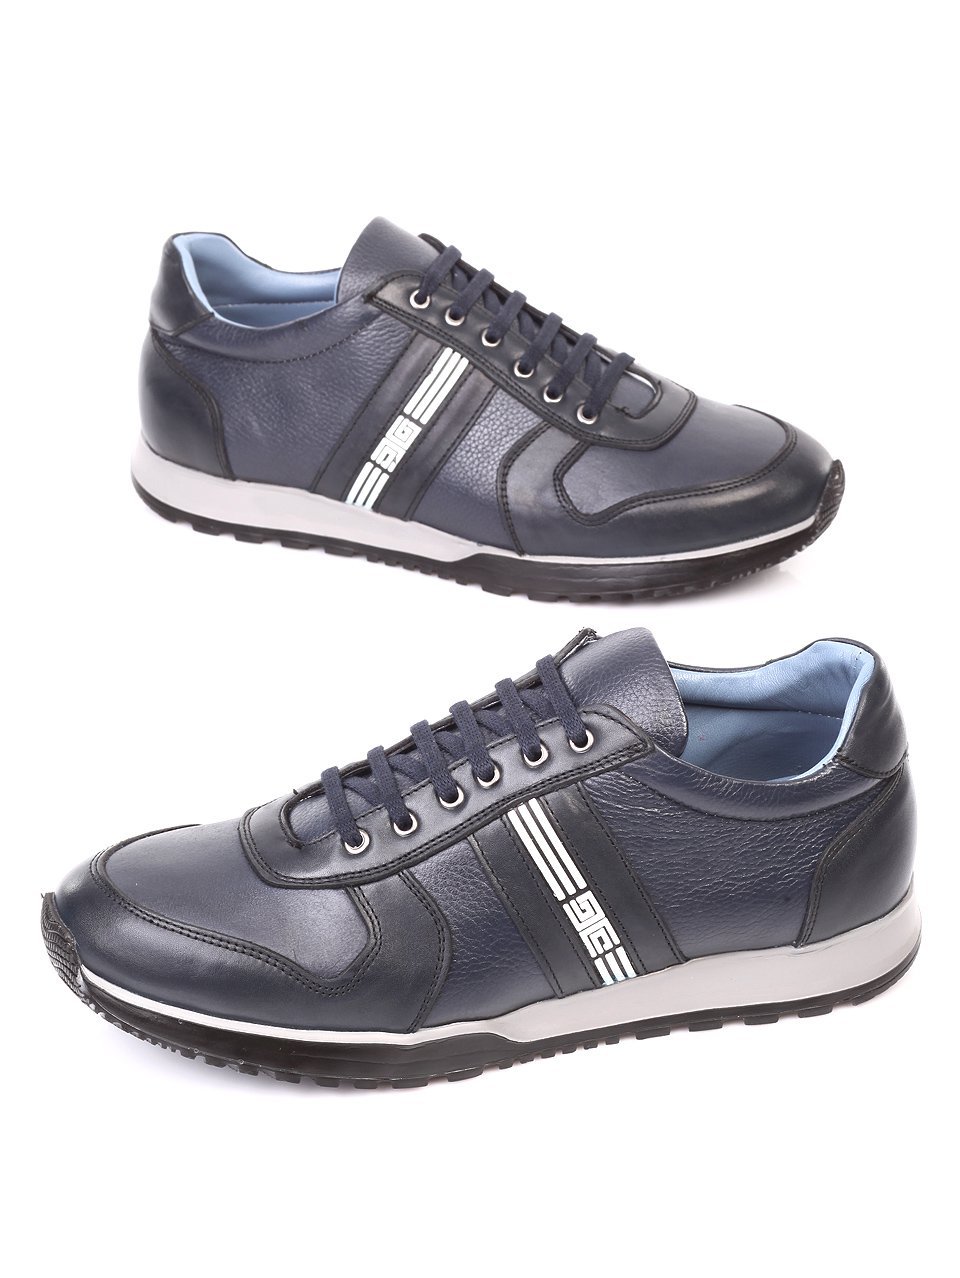 Ежедневни мъжки обувки от естествена кожа в синьо 7AT-171188 dk.blue